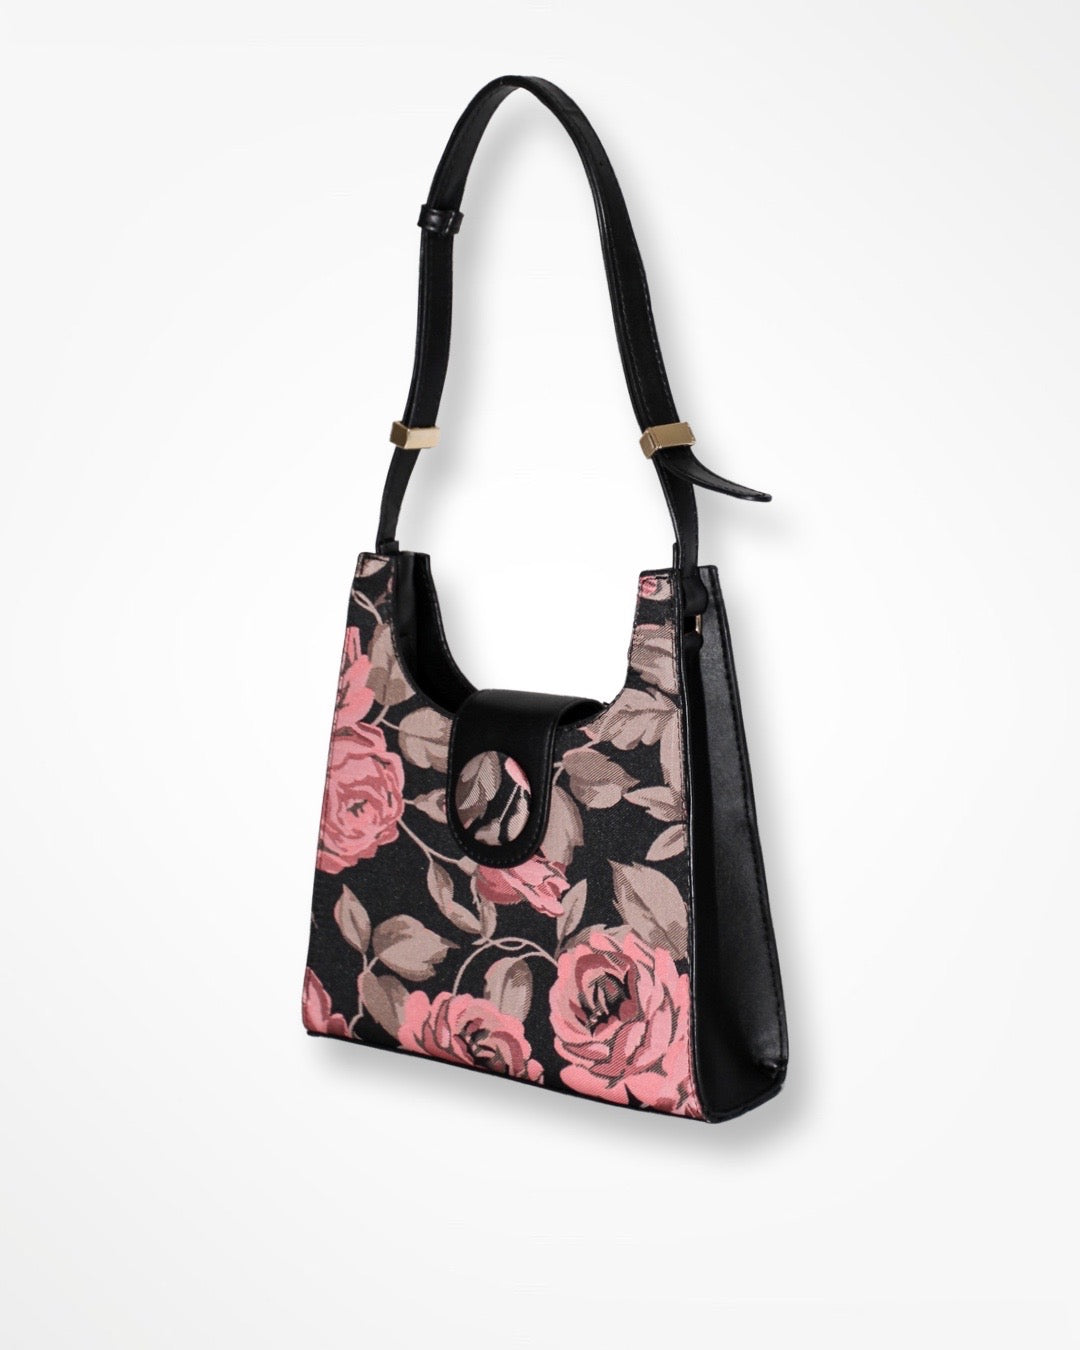 Vegan Leather Black/Pink Floral Hand Bag